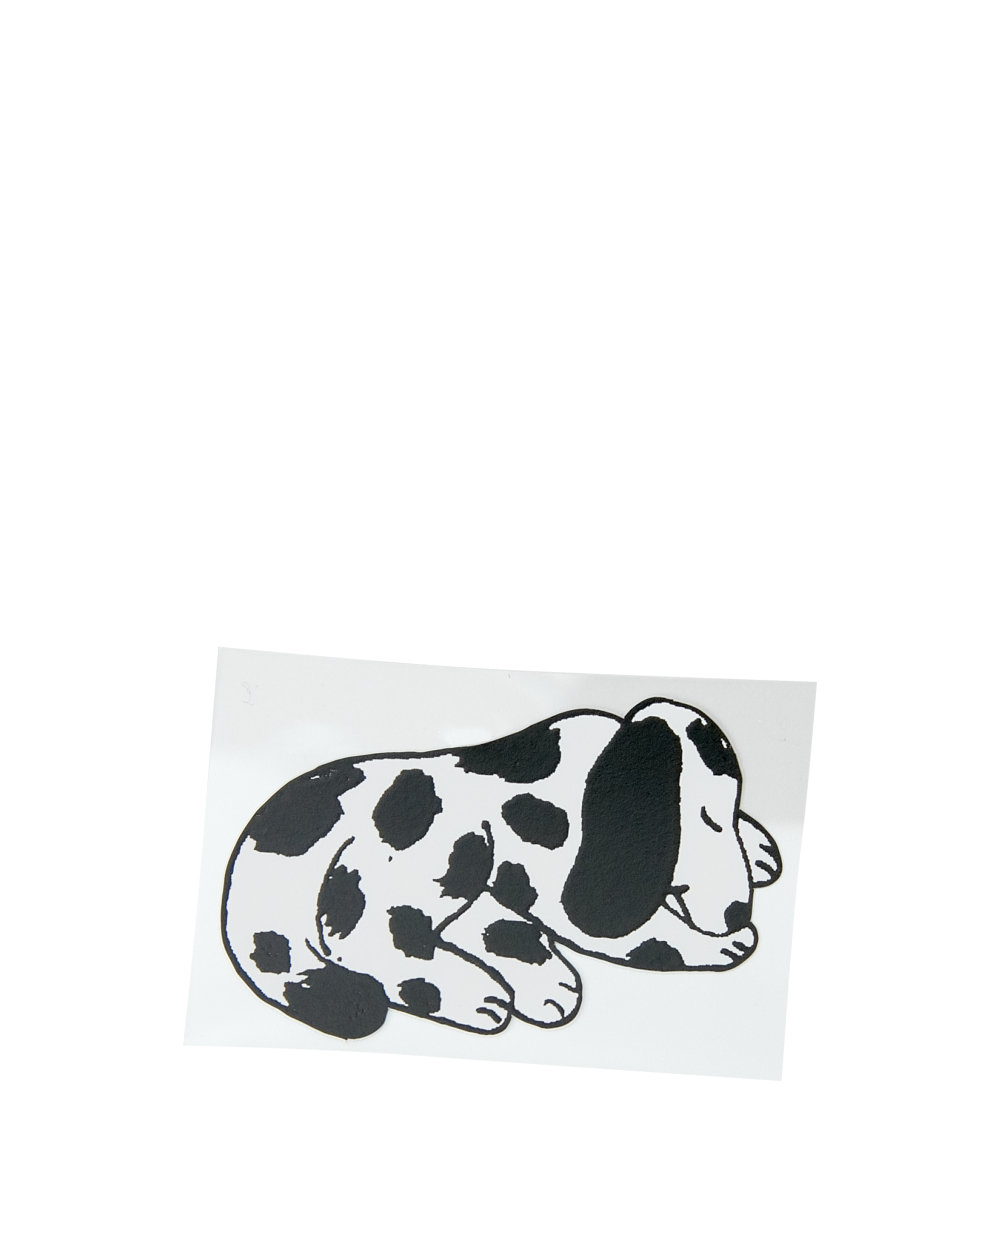 Sleepy Dog Sticker